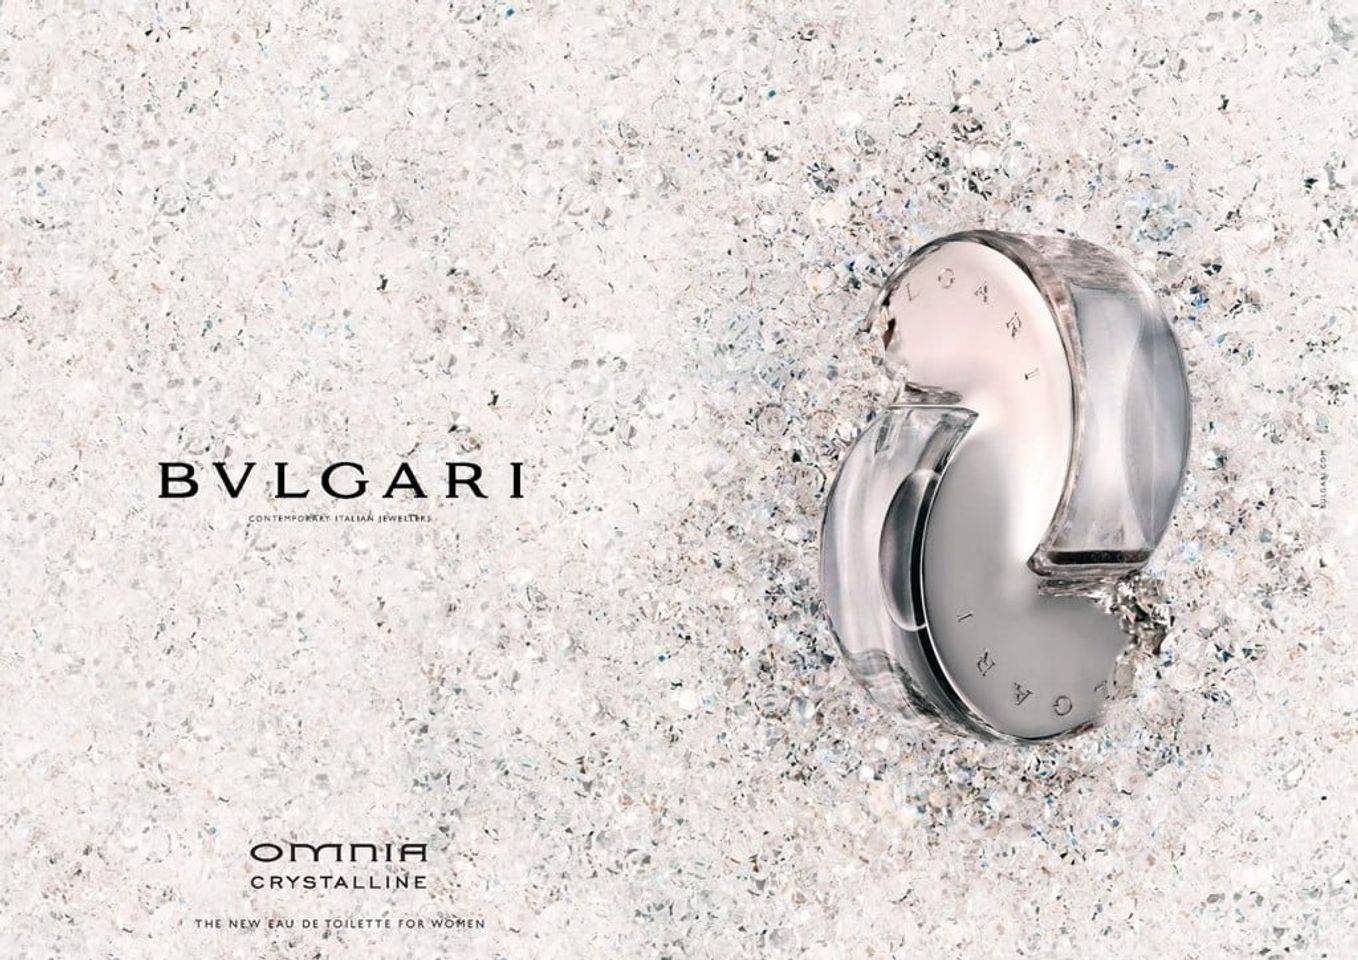 Nước hoa Bvlgari Omnia Crystalline EDT cho nữ với hương thơm thanh mát, bí ẩn